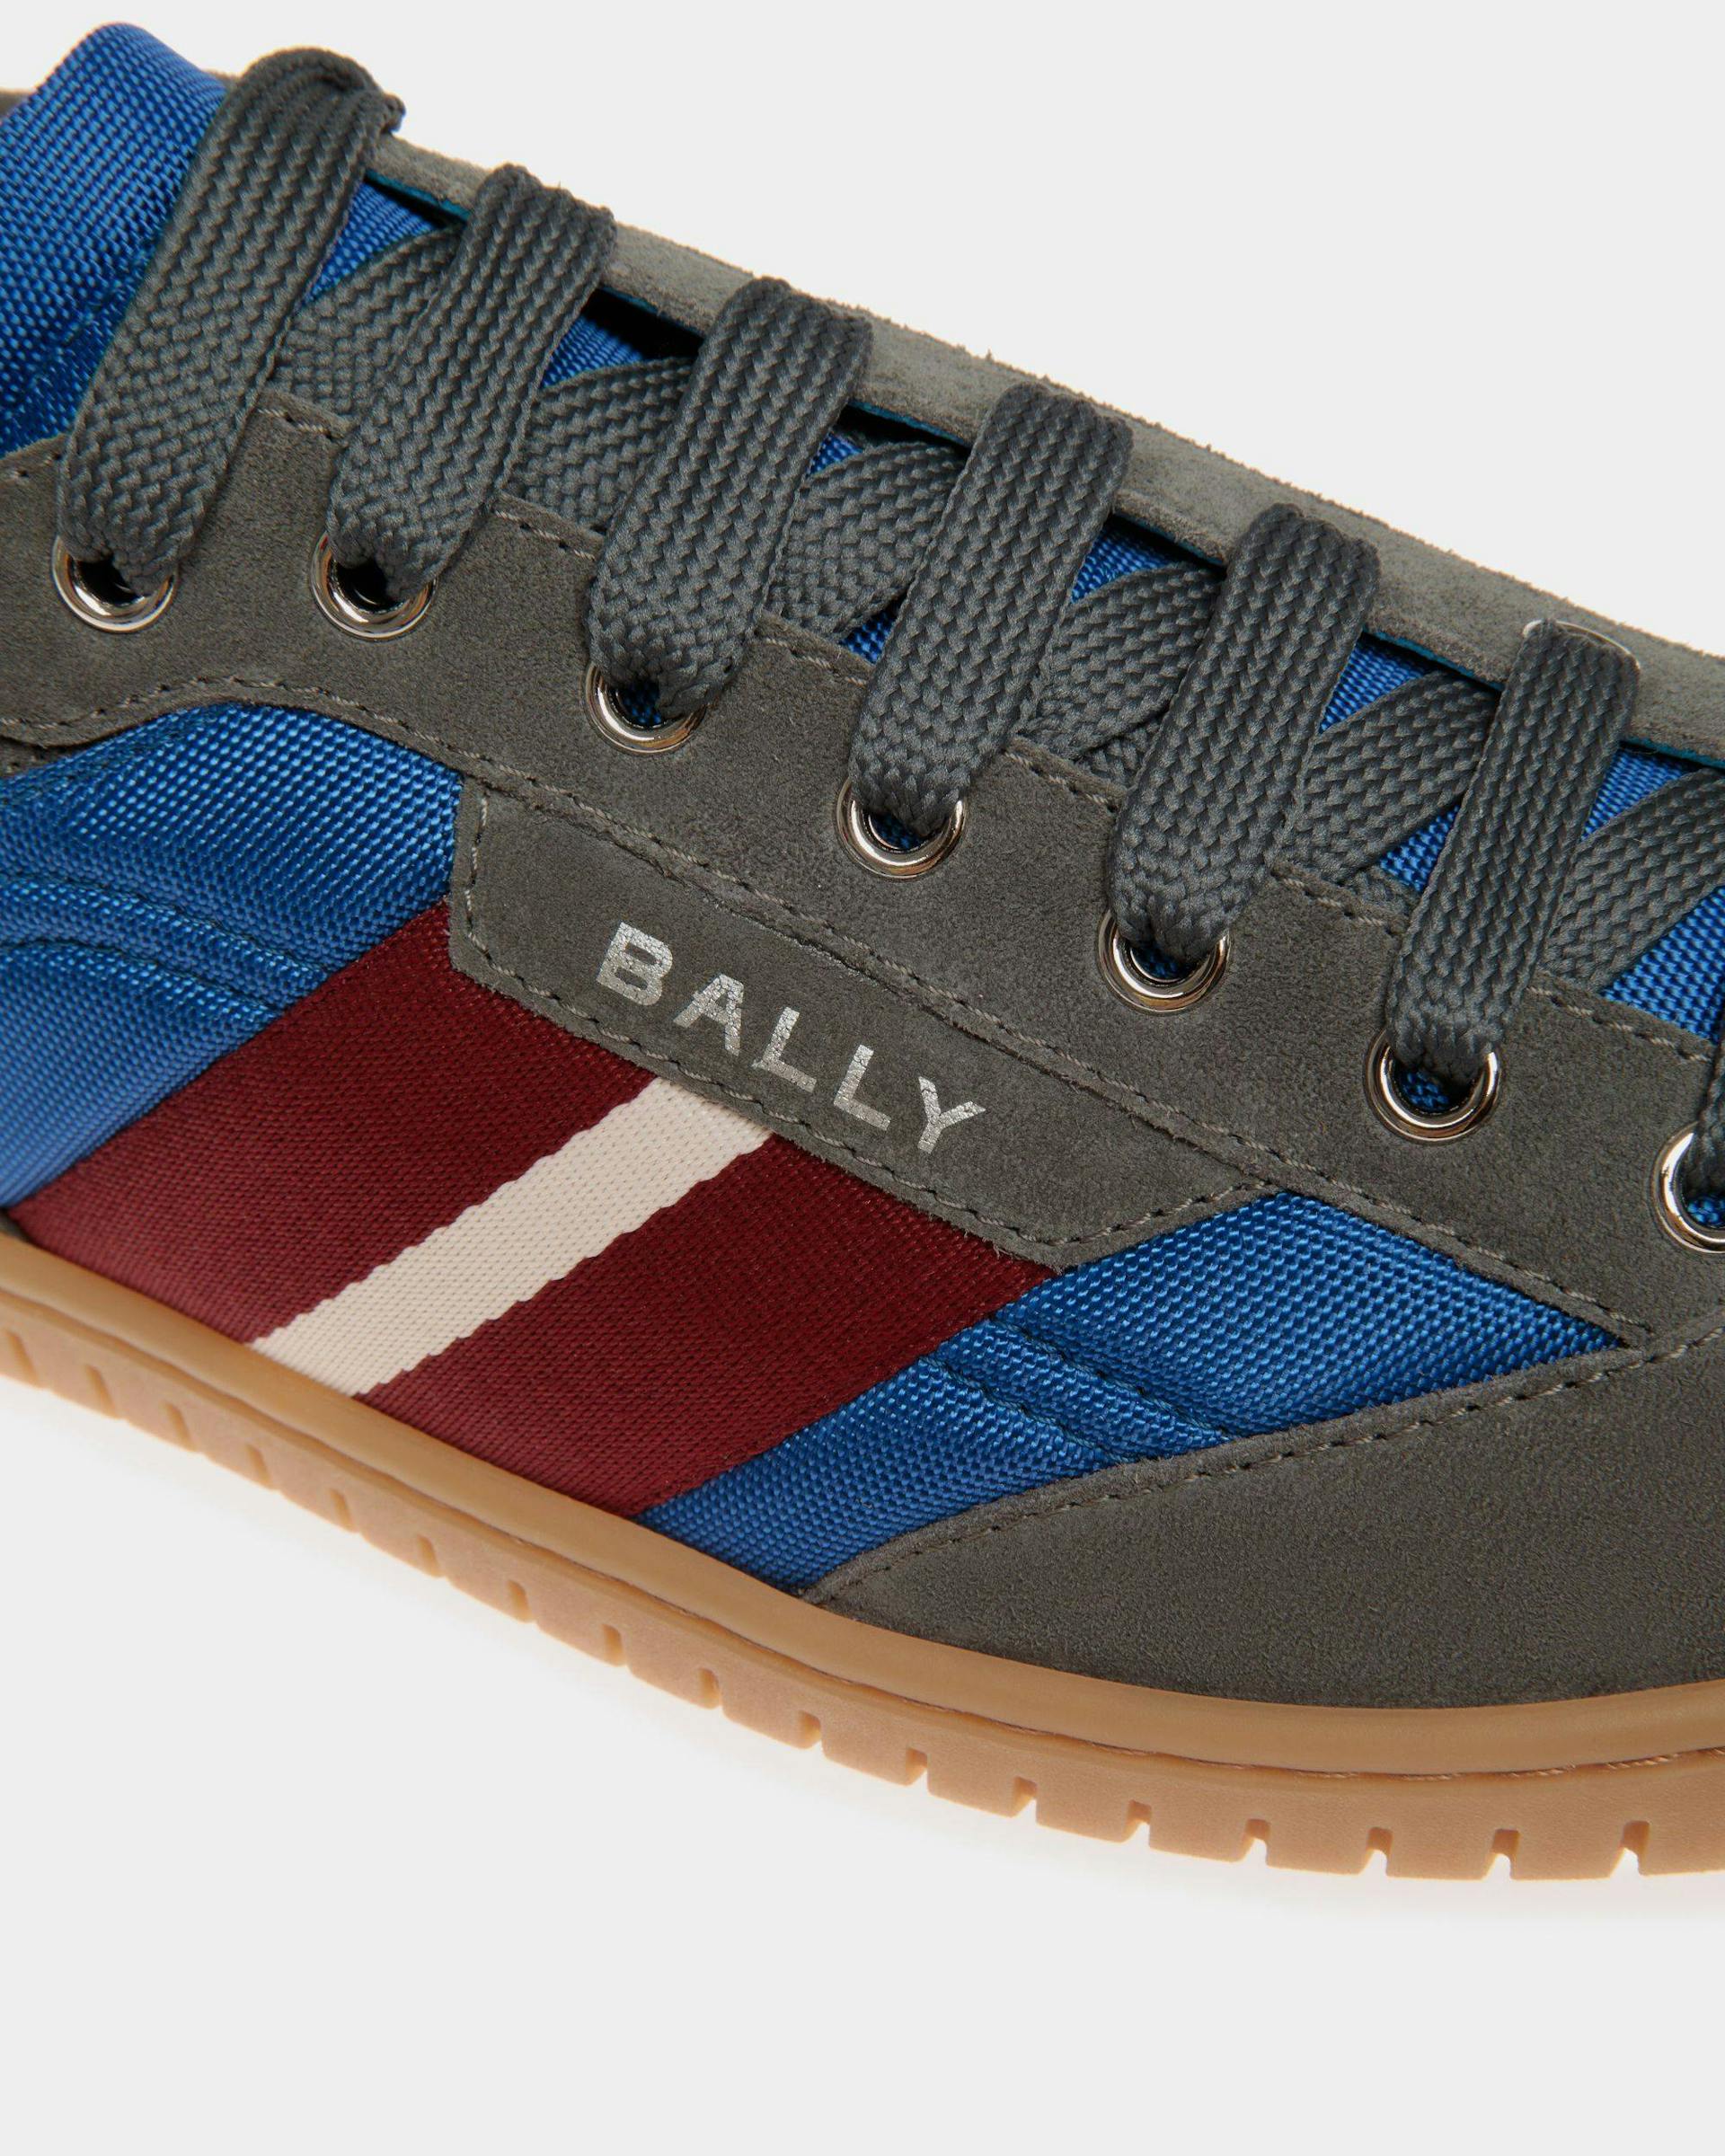 Men's Player Sneaker in Nylon | Bally | Still Life Detail